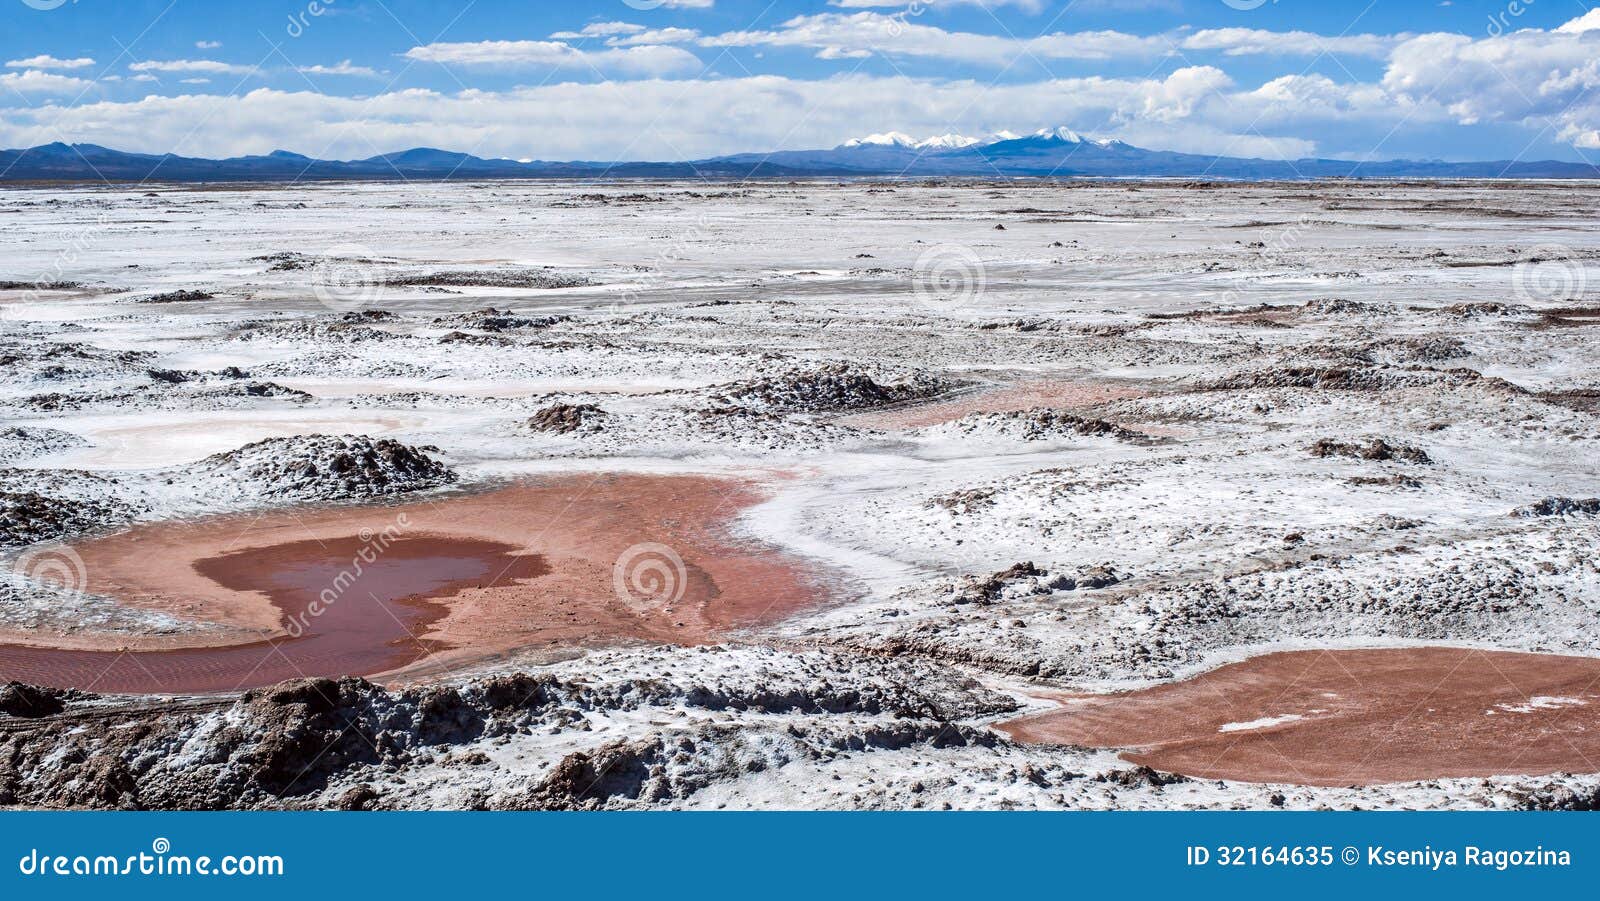 northwest argentina - salinas grandes desert landscape